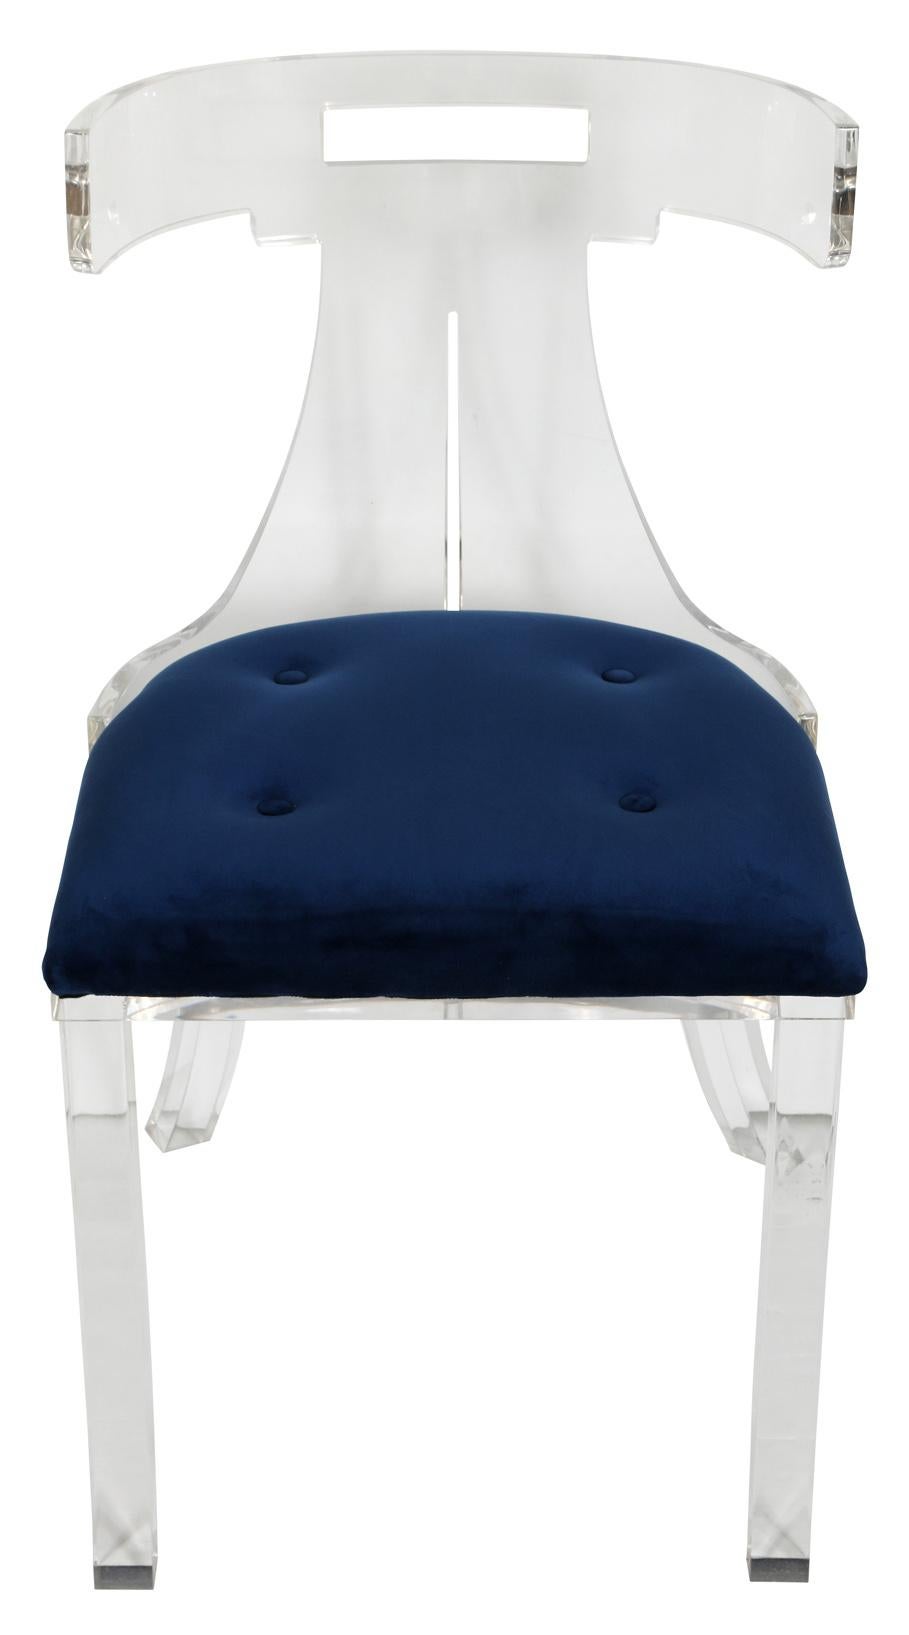 Ein eleganter und schicker Beistellstuhl aus Lucite mit blau gepolstertem Sitz. Obwohl er leicht und luftig aussieht, hat der Stuhl ein gewisses Gewicht. Er würde sich perfekt als Schreibtischstuhl eignen.